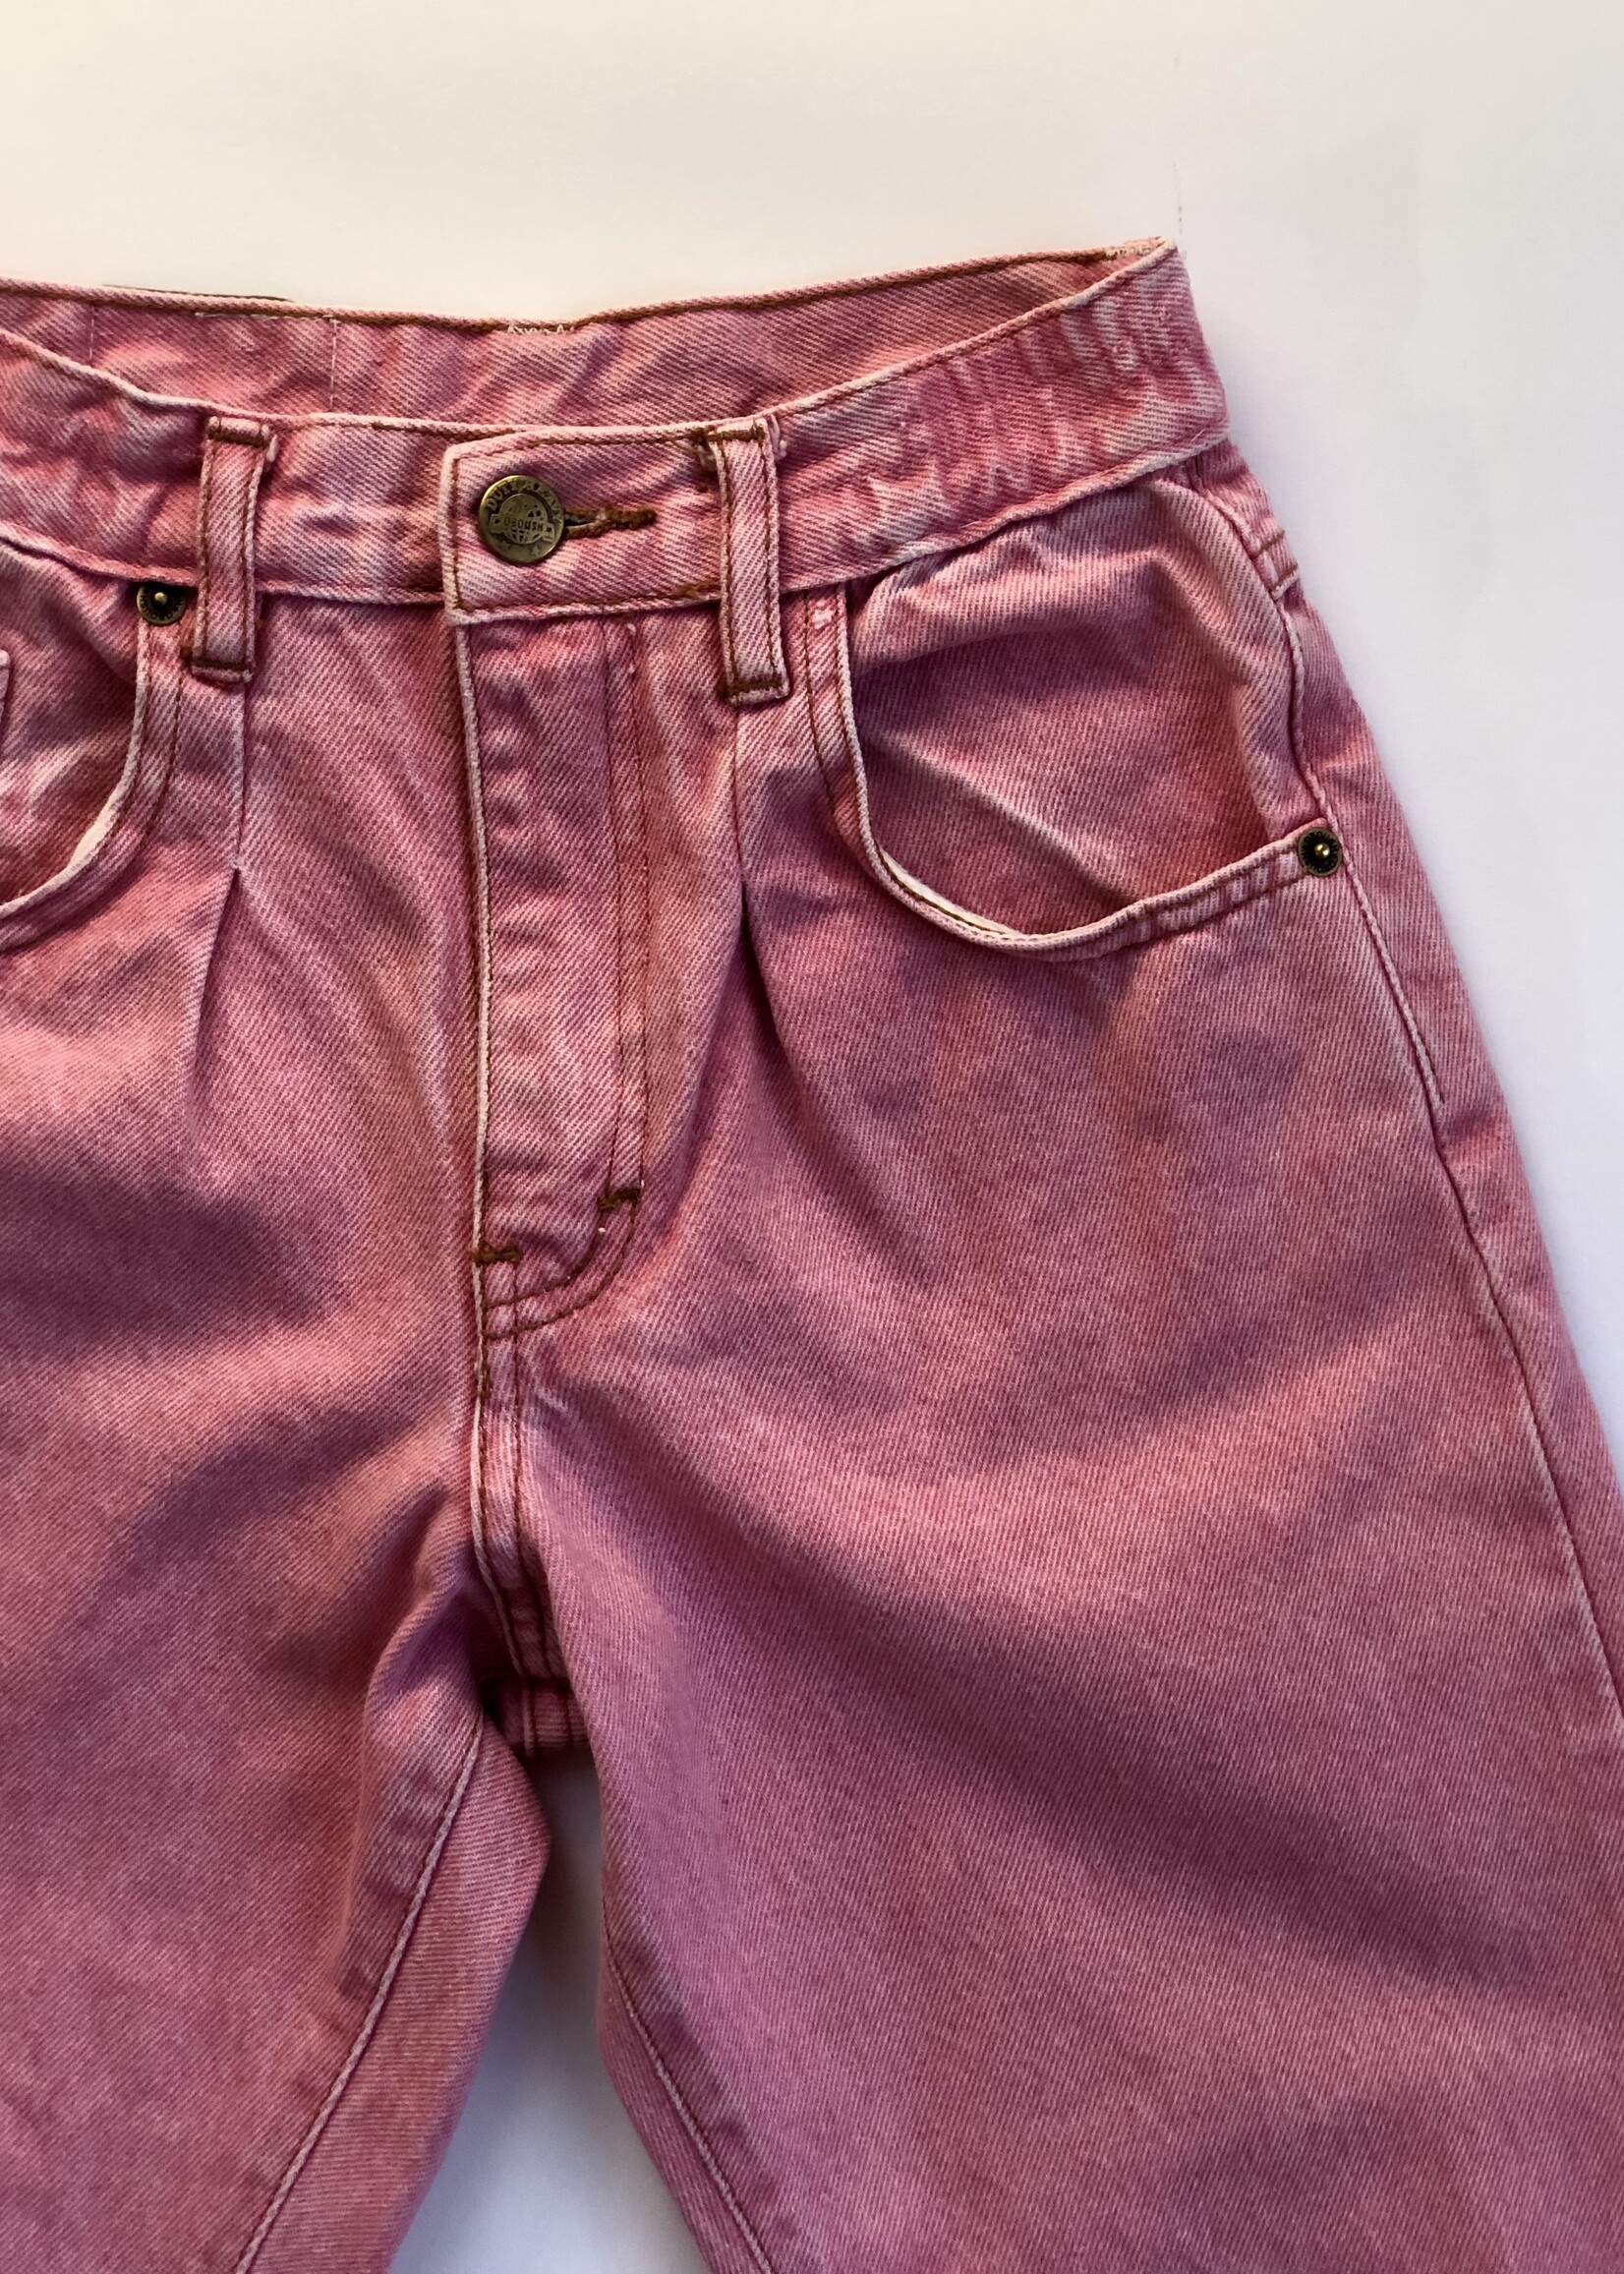 Vintage The Pink Jeans 8y